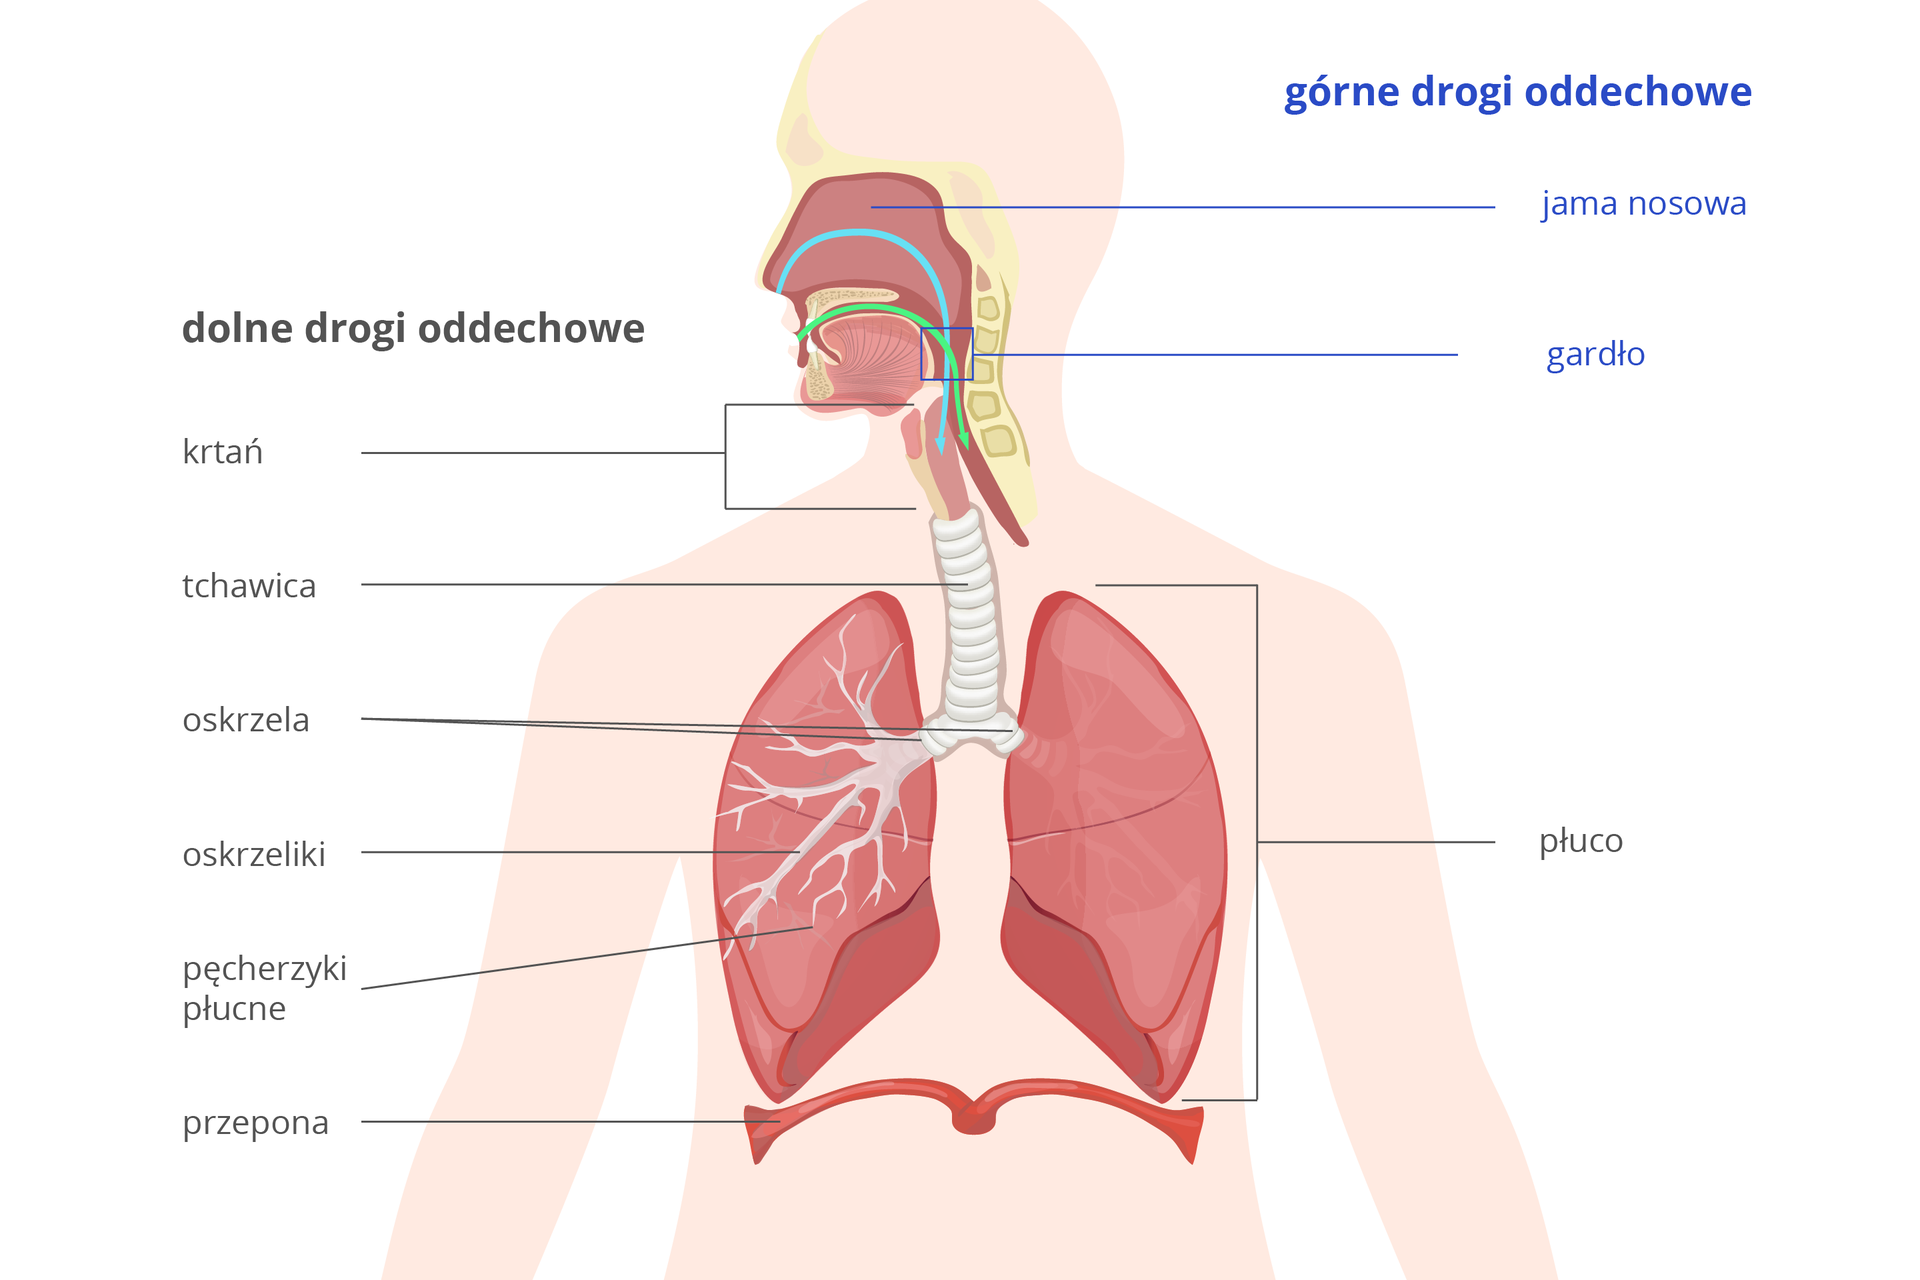 Ilustracja przedstawia sylwetkę torsu człowieka z wrysowanymi ciemnoróżowymi narządami układu oddechowego. Na niebiesko po prawej podpisano górne drogi oddechowe: jamę nosową i gardło. Klamerka poniżej obejmuje płuco. Po lewej podpisy dolnych dróg oddechowych: krtań, tchawica, oskrzela, oskrzeliki, pęcherzyki płucne. Do układu oddechowego zalicza się też mięsień przepona.